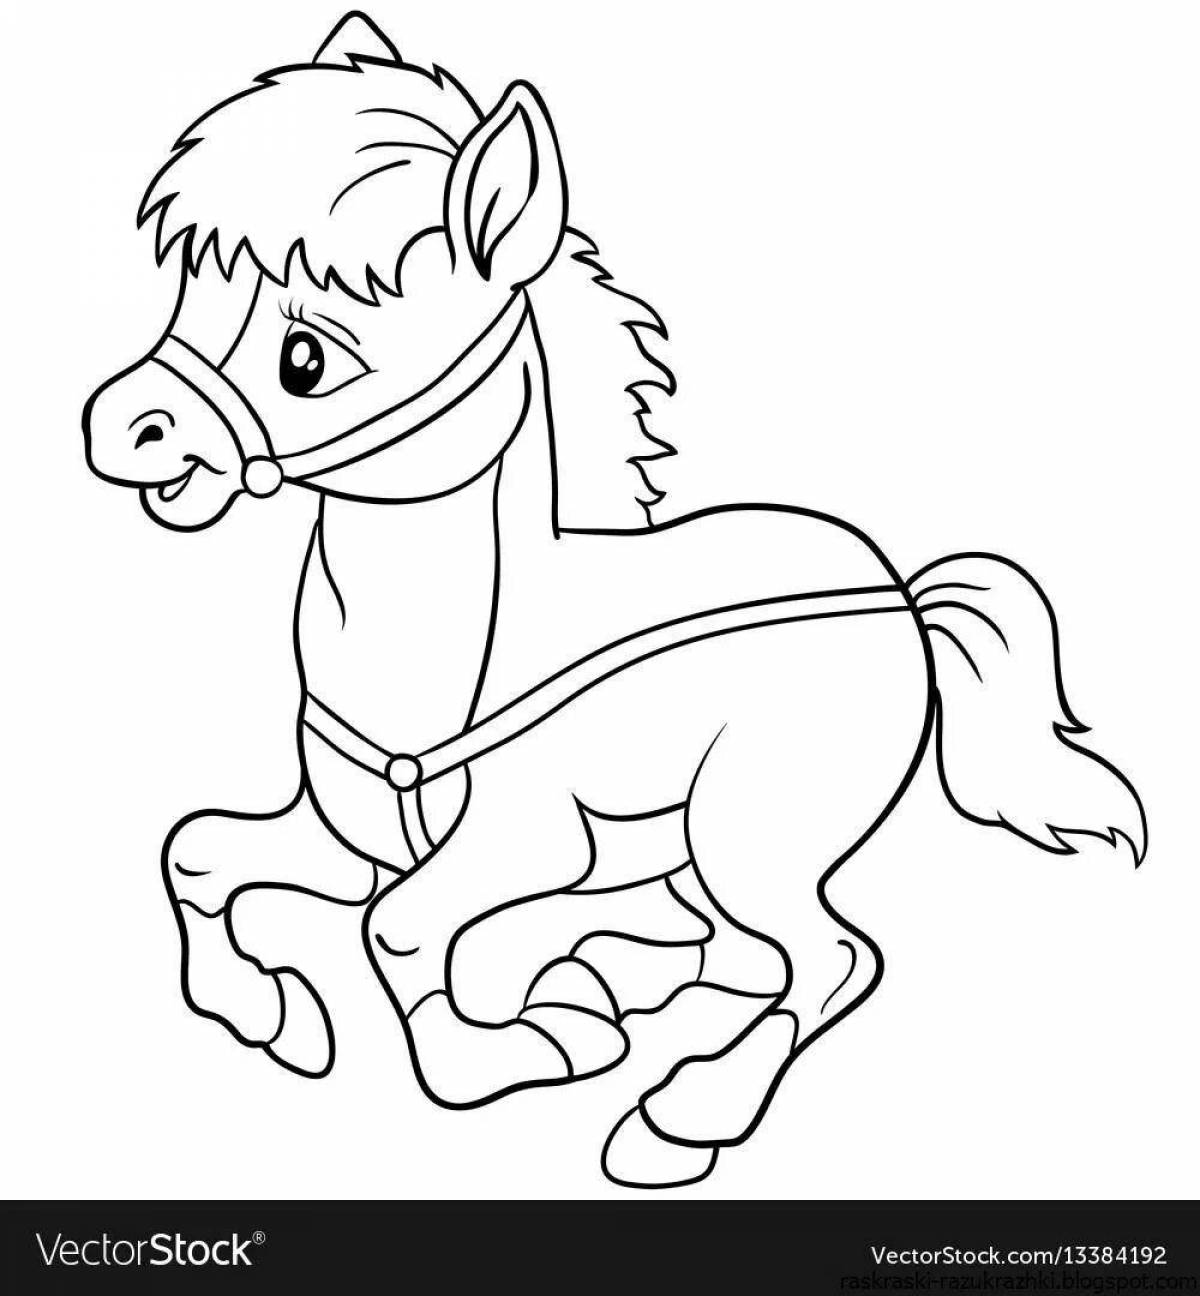 Раскрашиваем лошадку. Раскраска. Лошадка. Лошадь для раскрашивания. Лошадка раскраска для детей. Лошадь раскраска для детей.